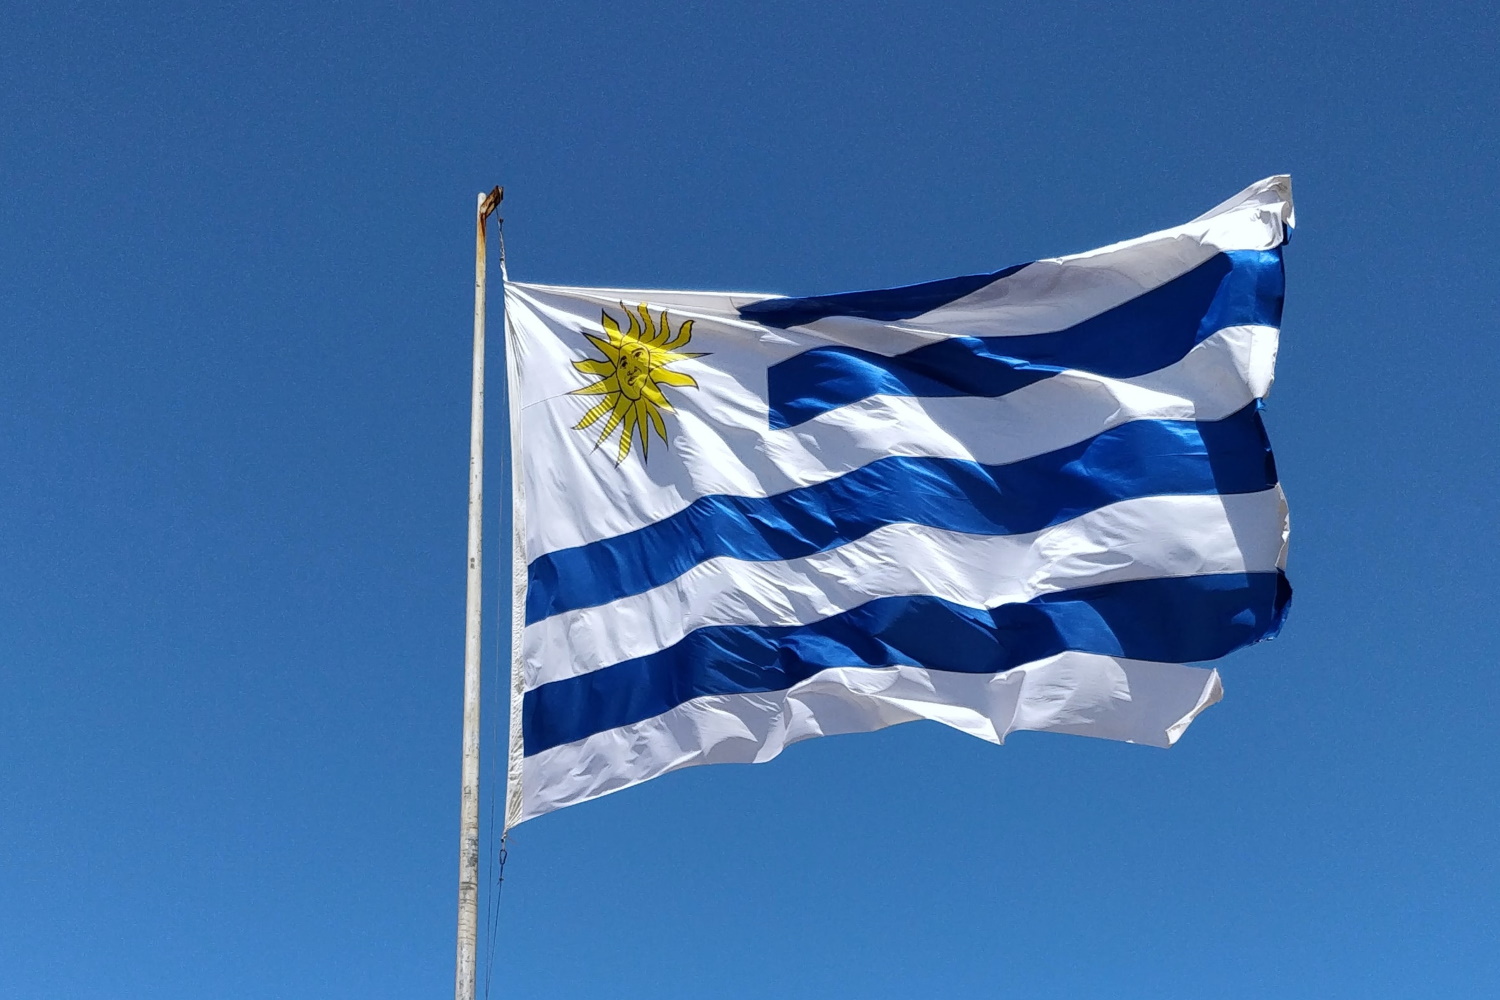 Uruguay es el país que muestra el mayor nivel de apoyo de los ciudadanos a integrarse como región según informe del Banco Interamericano de Desarrollo (BID)